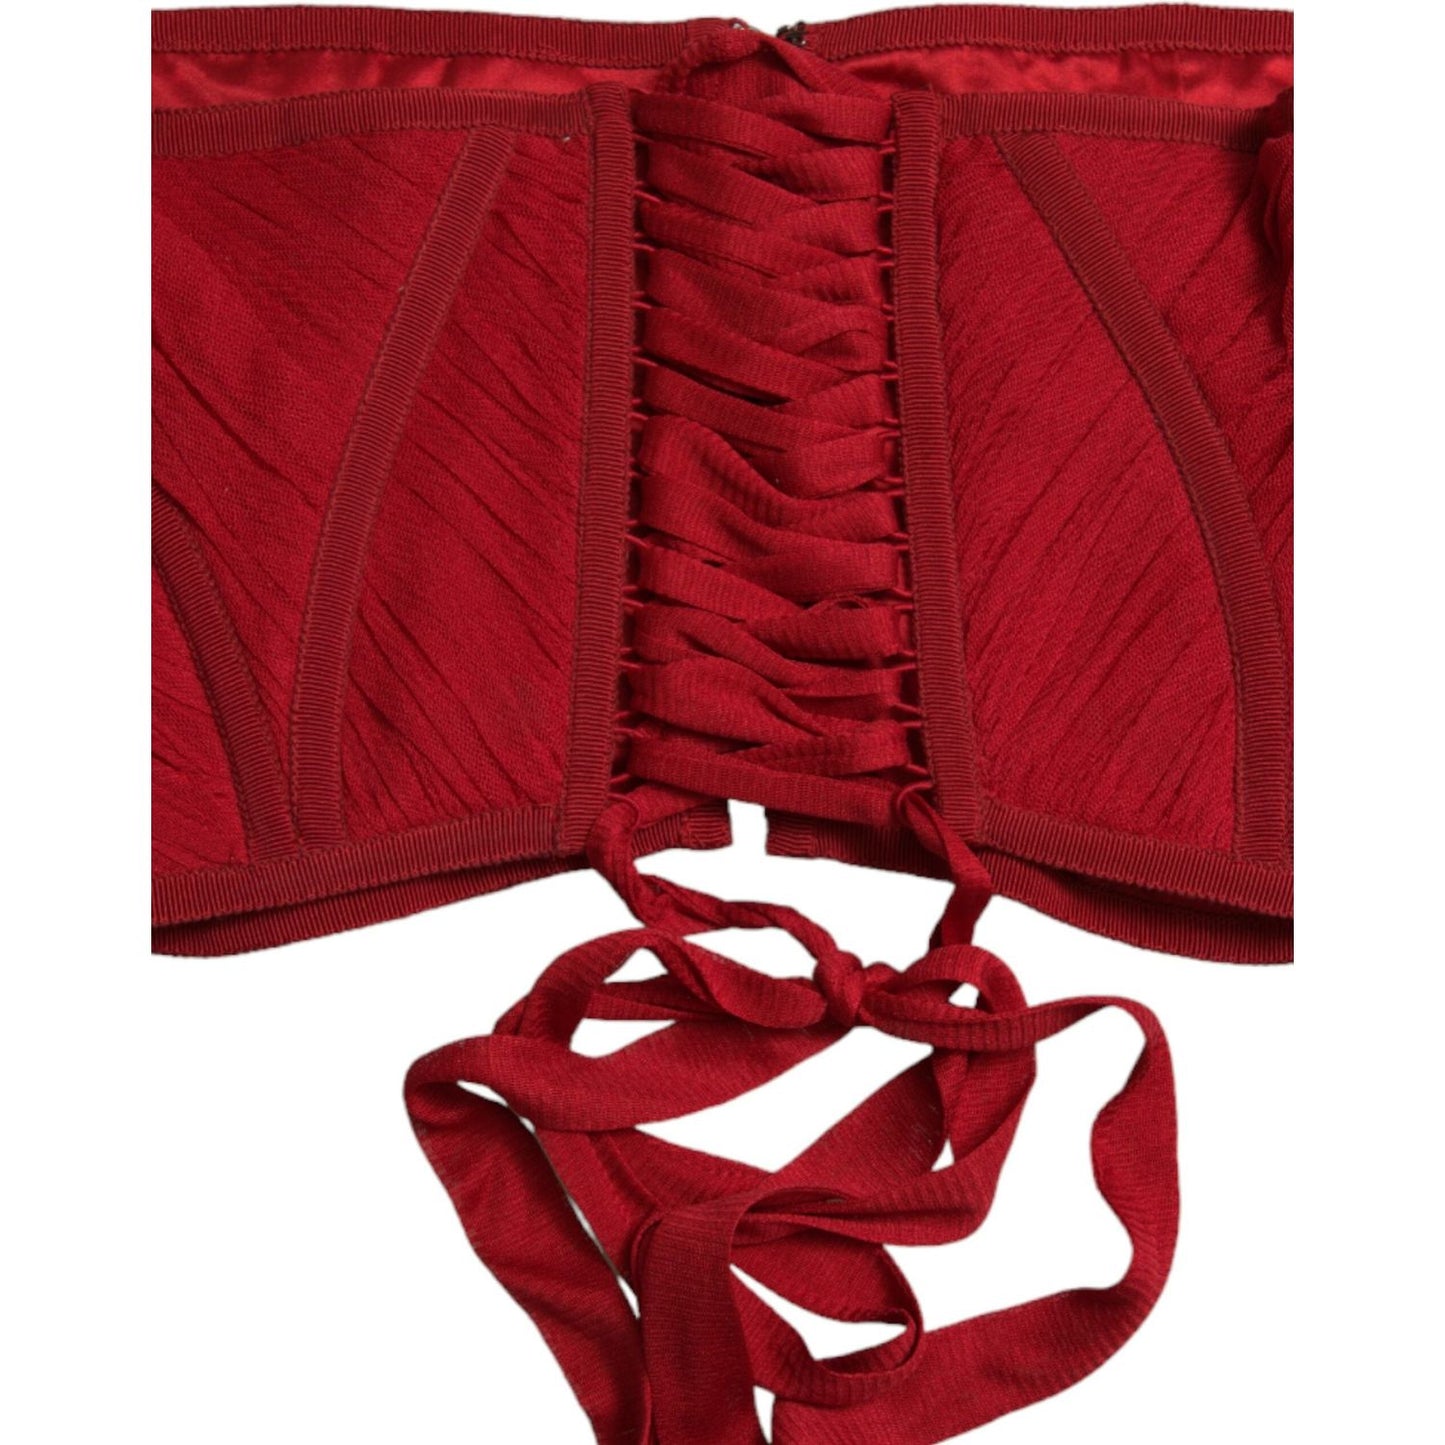 Dolce & Gabbana Silk Corset Waist Belt in Fiery Red red-silk-belt-waist-lace-up-strap-corset